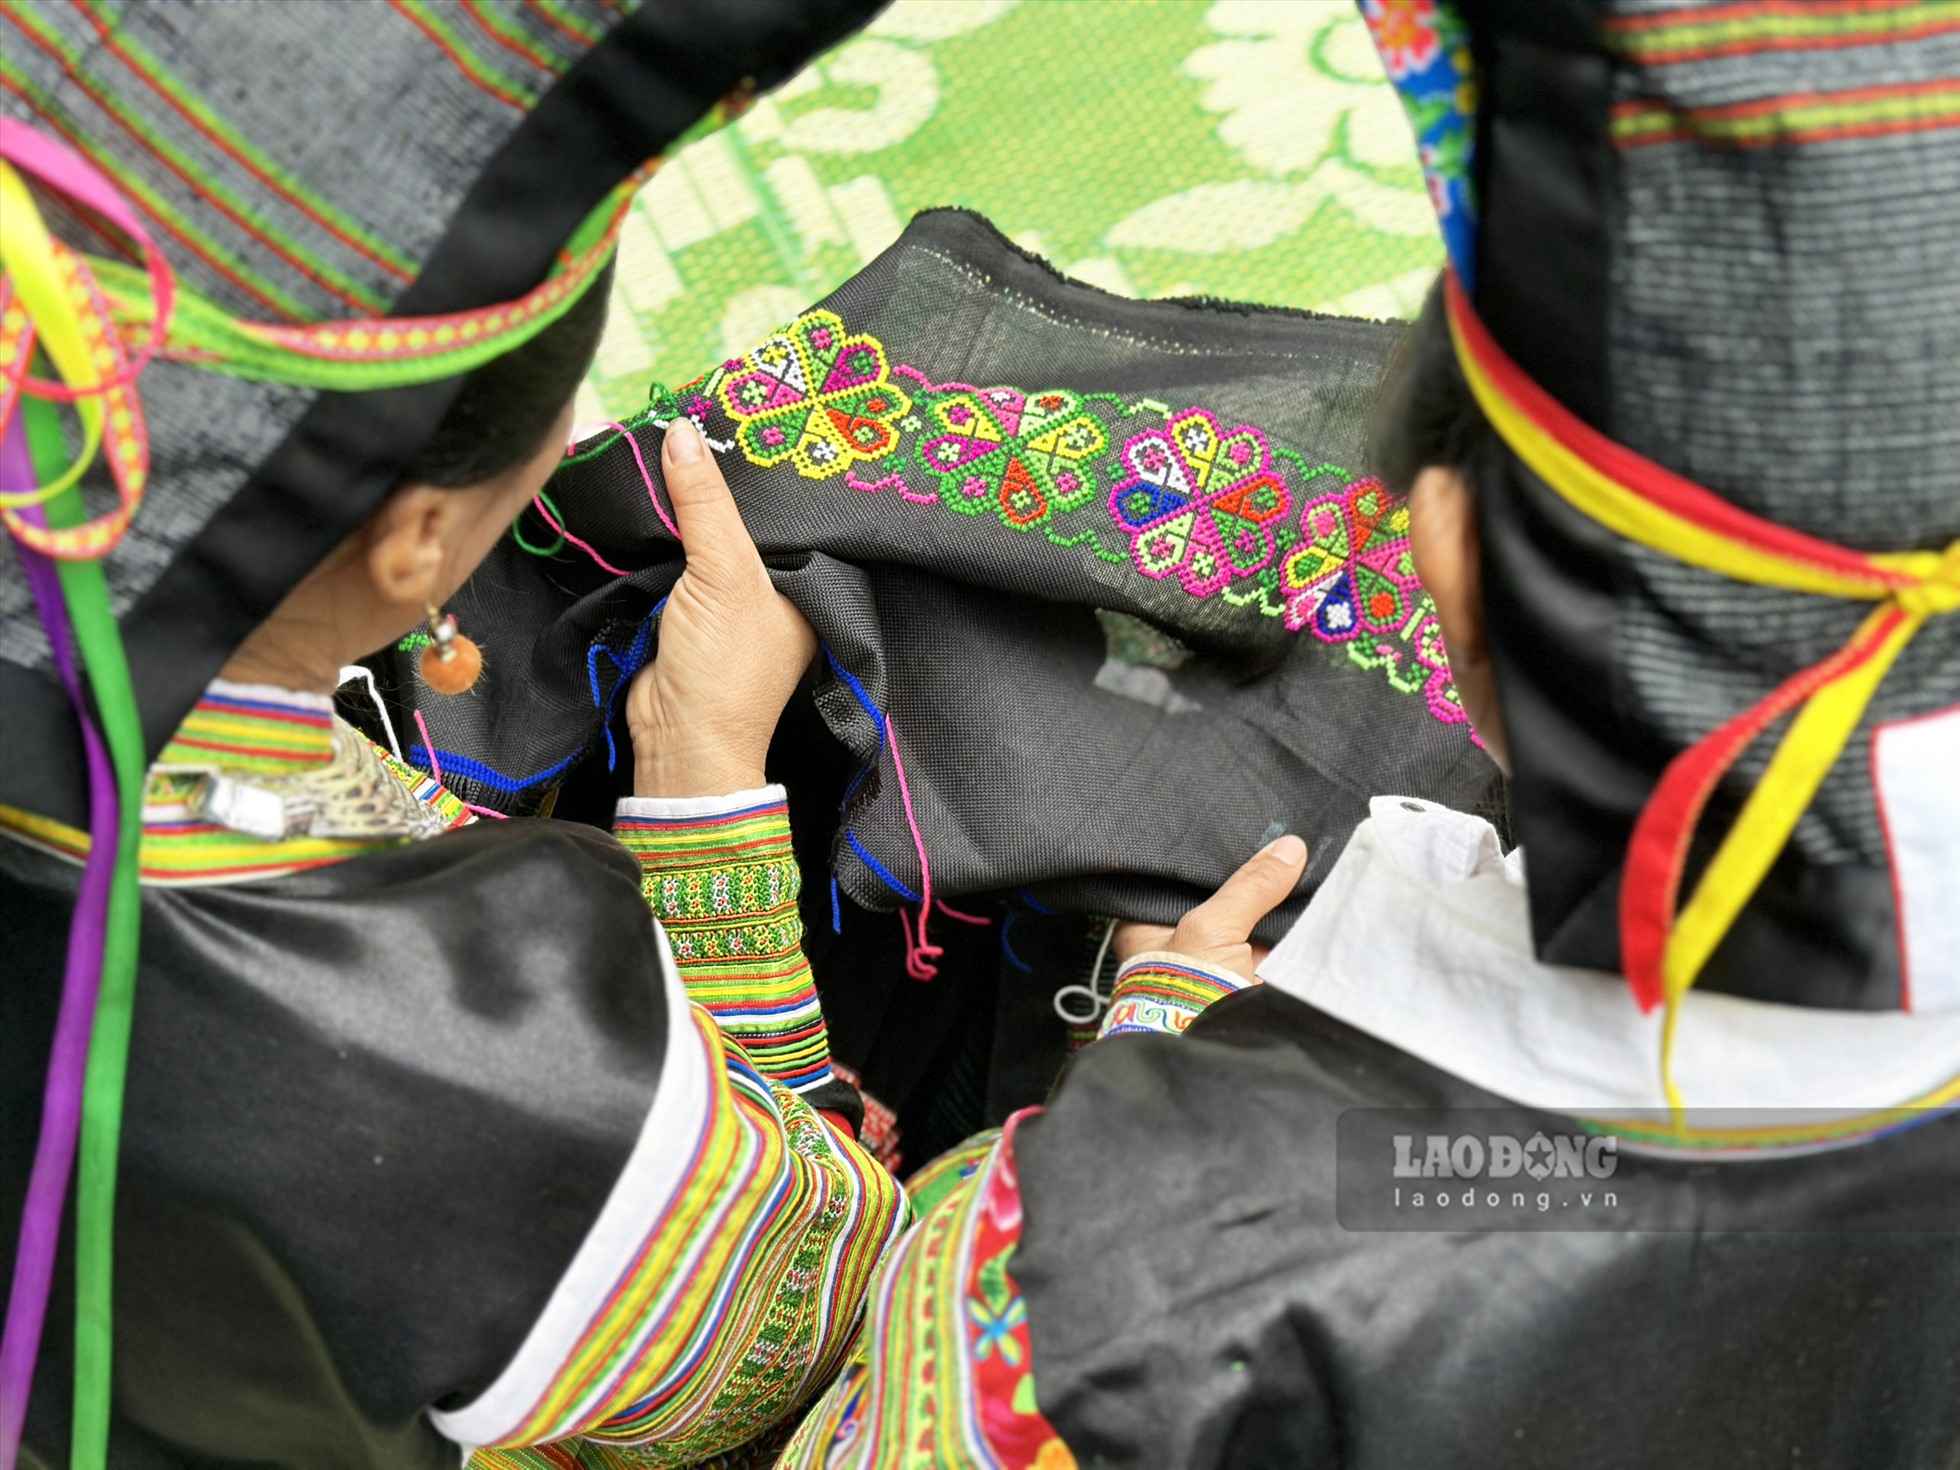 Phụ nữ Mông đen ở đây ai cũng biết làm trang phục truyền thống. Họ đều tự tay lựa chọn nguyên liệu ở chợ rồi tự tay may, thêu thùa váy áo cho mình. Đối với họ khi làm được một bộ trang phục đẹp đó là sự hãnh diện, niềm tự hào đối với bạn bè cùng trang lứa.